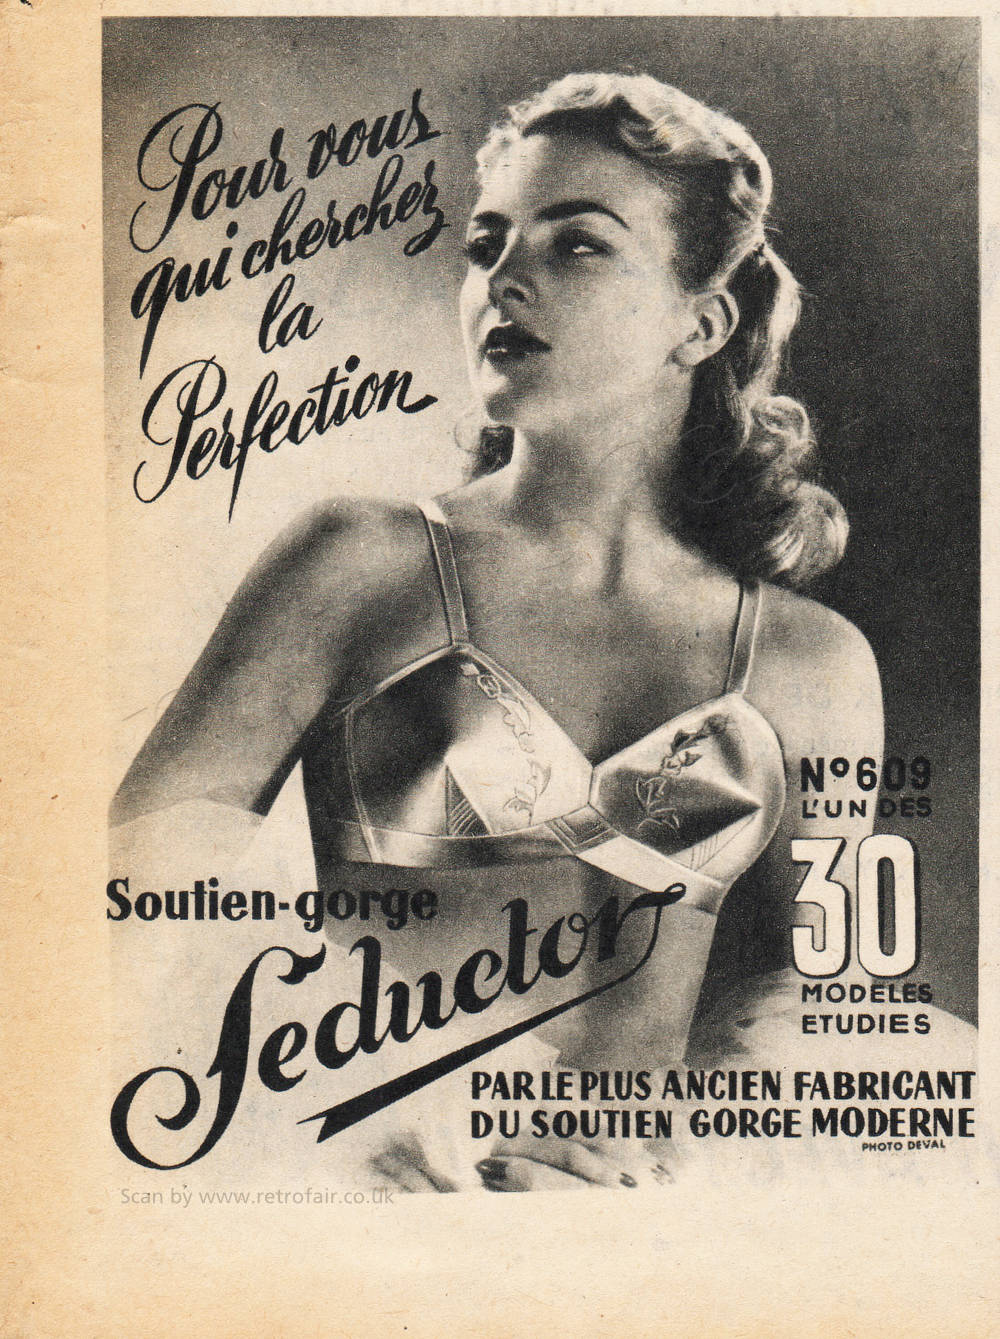 1959 Seductor Lingerie - unframed vintage ad